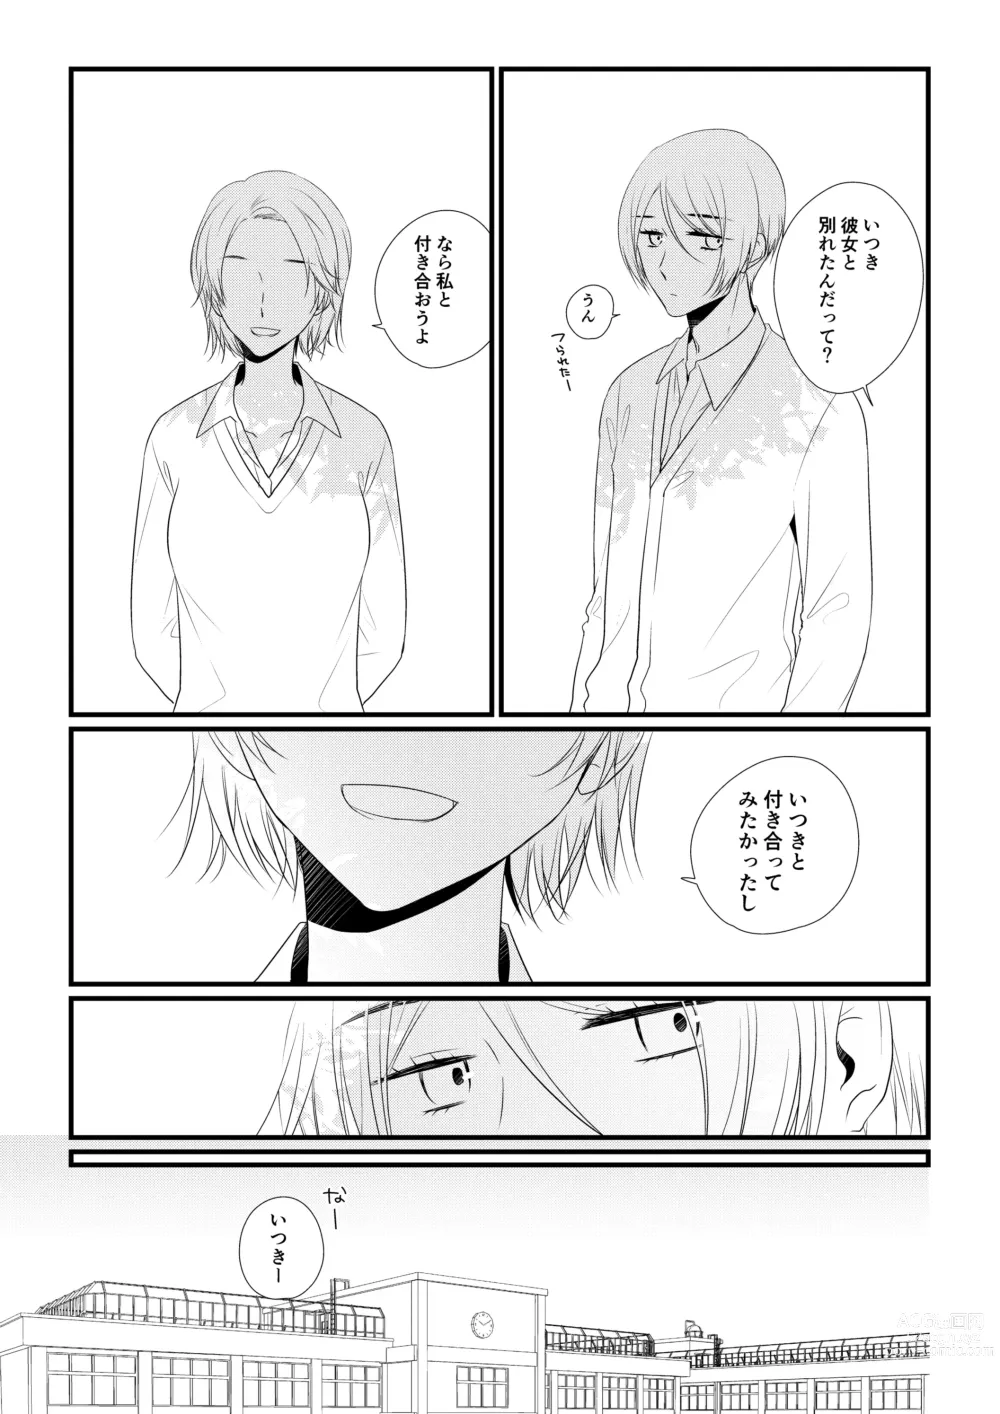 Page 136 of doujinshi Itsuki to Yuusei